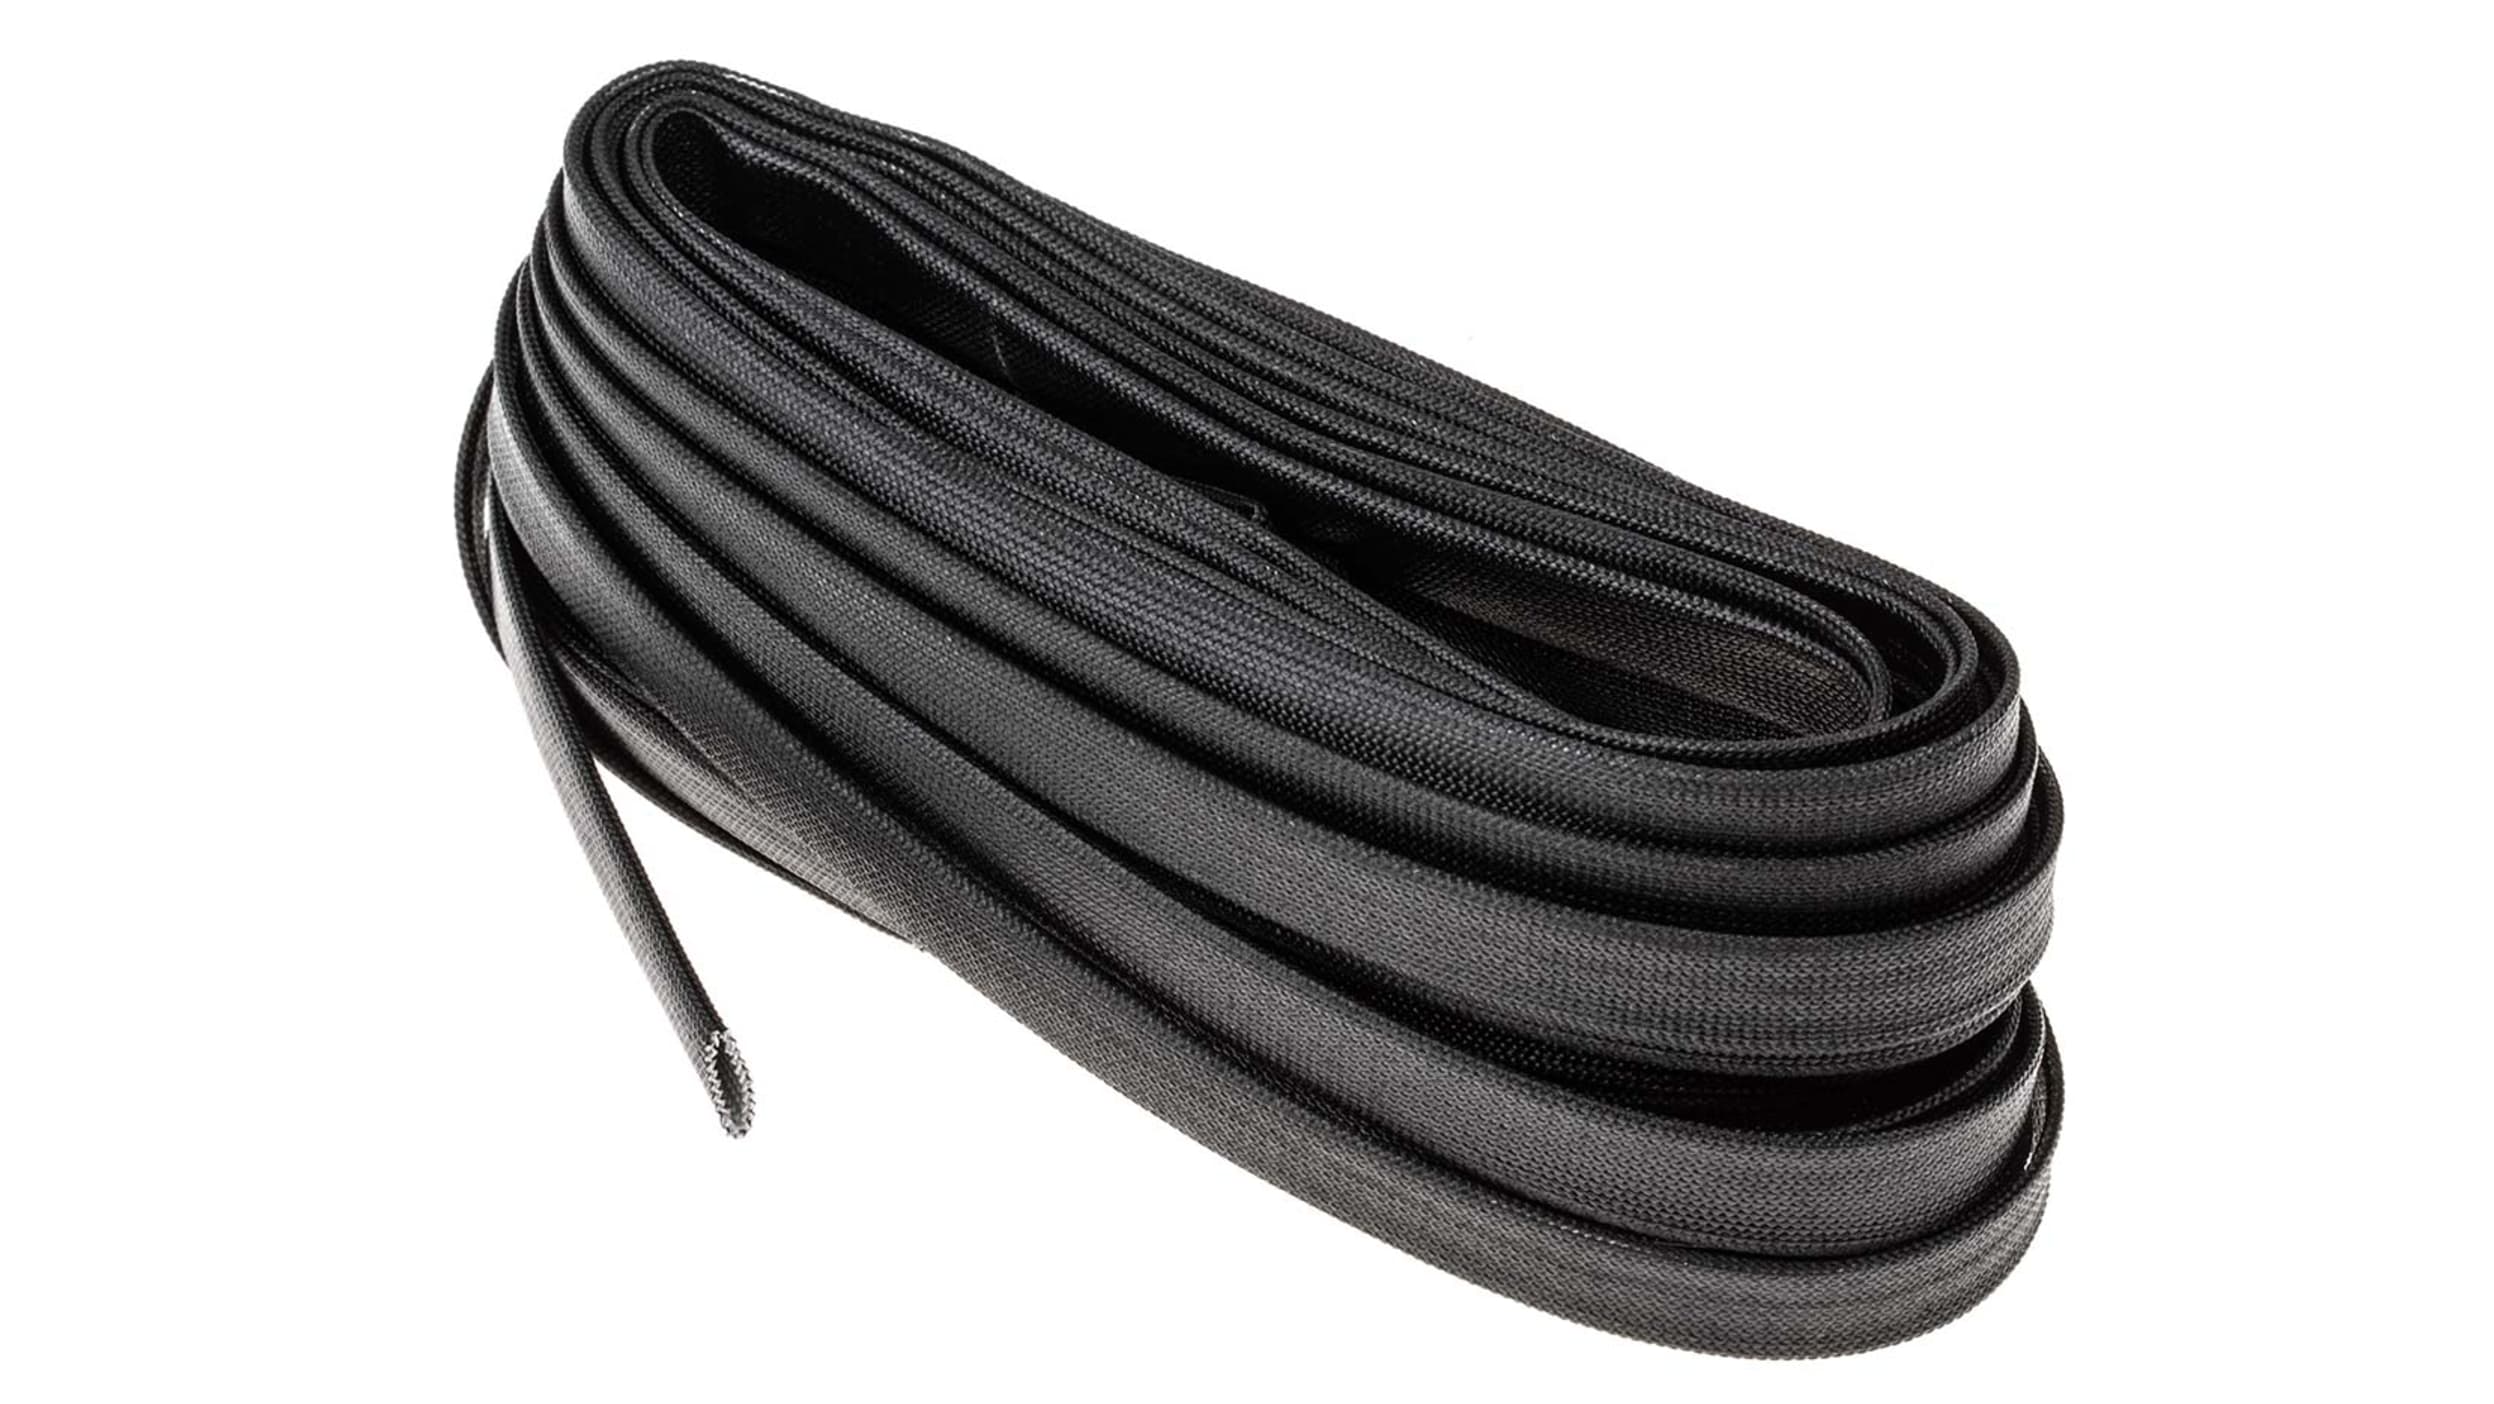 RS PRO Kabelschlauch Schwarz Acryl-Glasfaser für Kabel-Ø 6mm, Länge 5m  Umflochtener Nein